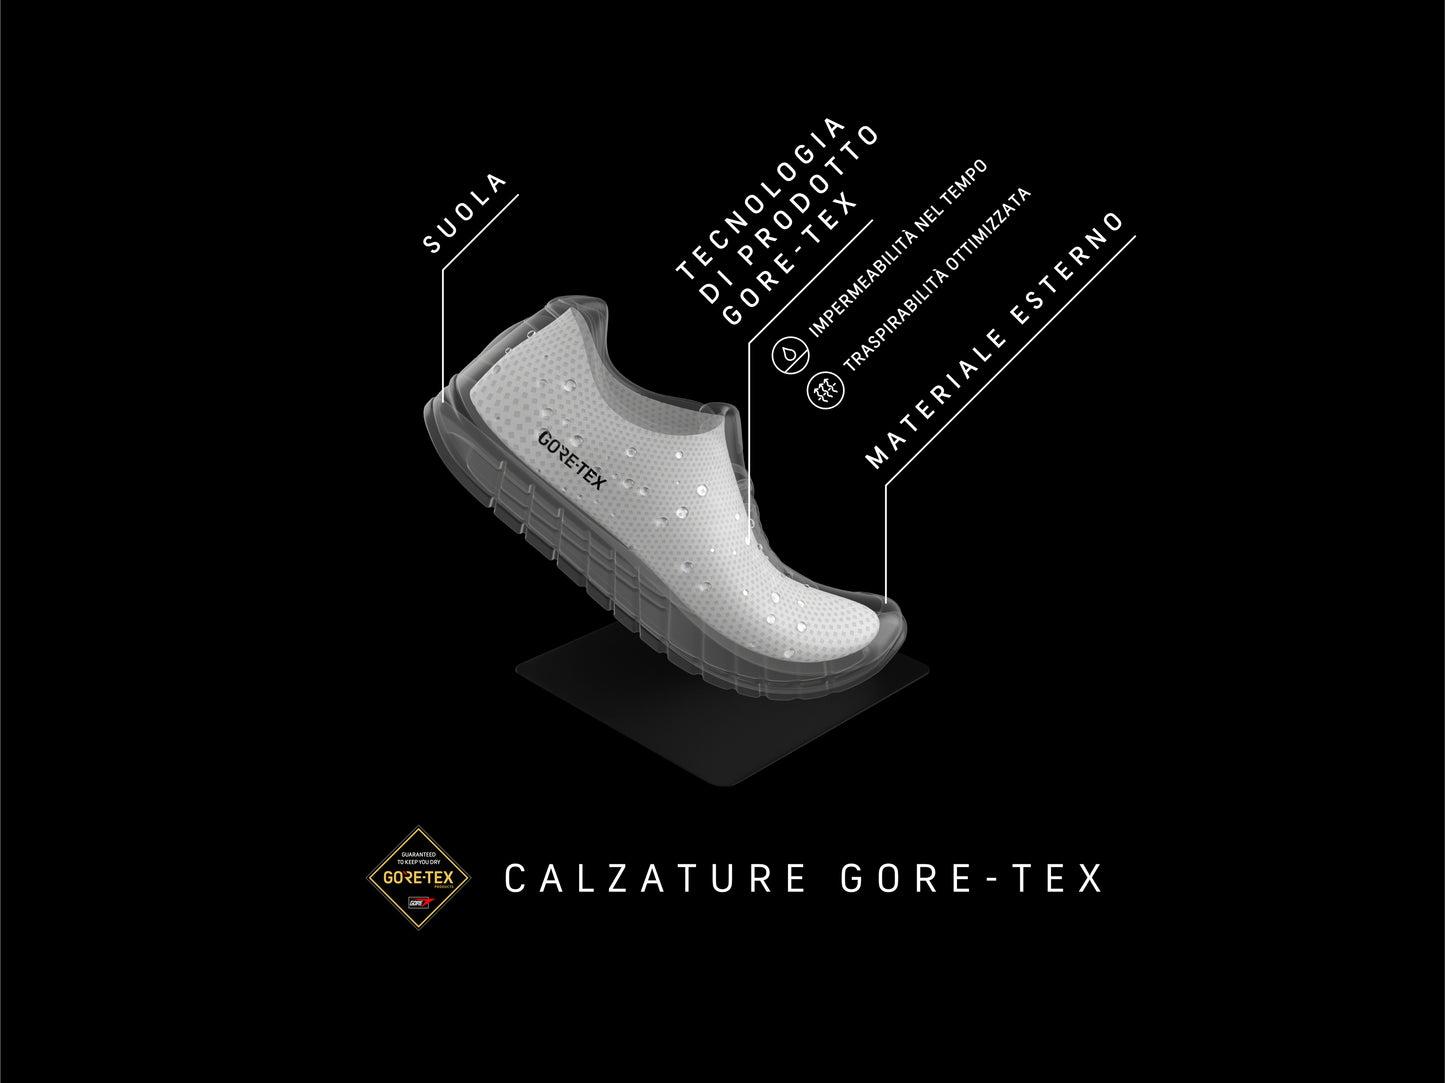 Igi&co scarpa con strappi GORE-TEX performance - Igi&co